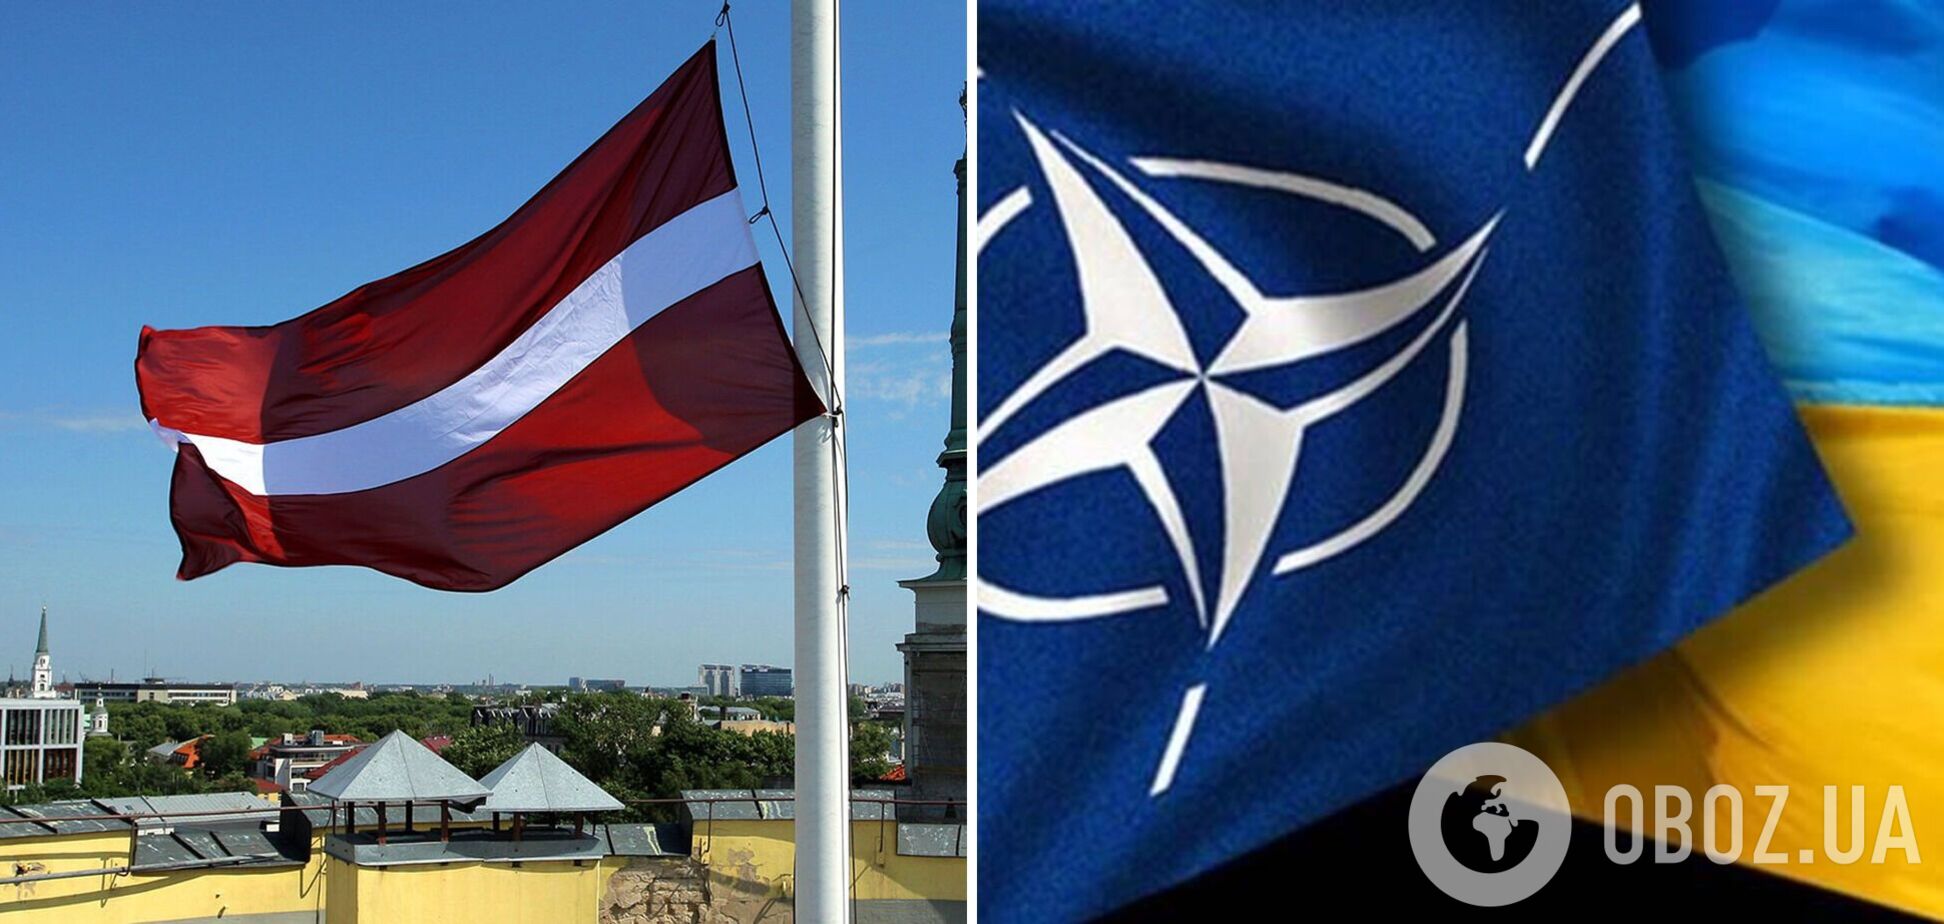 'Не медлите': экс-президенты Литвы призвали принять Украину в НАТО